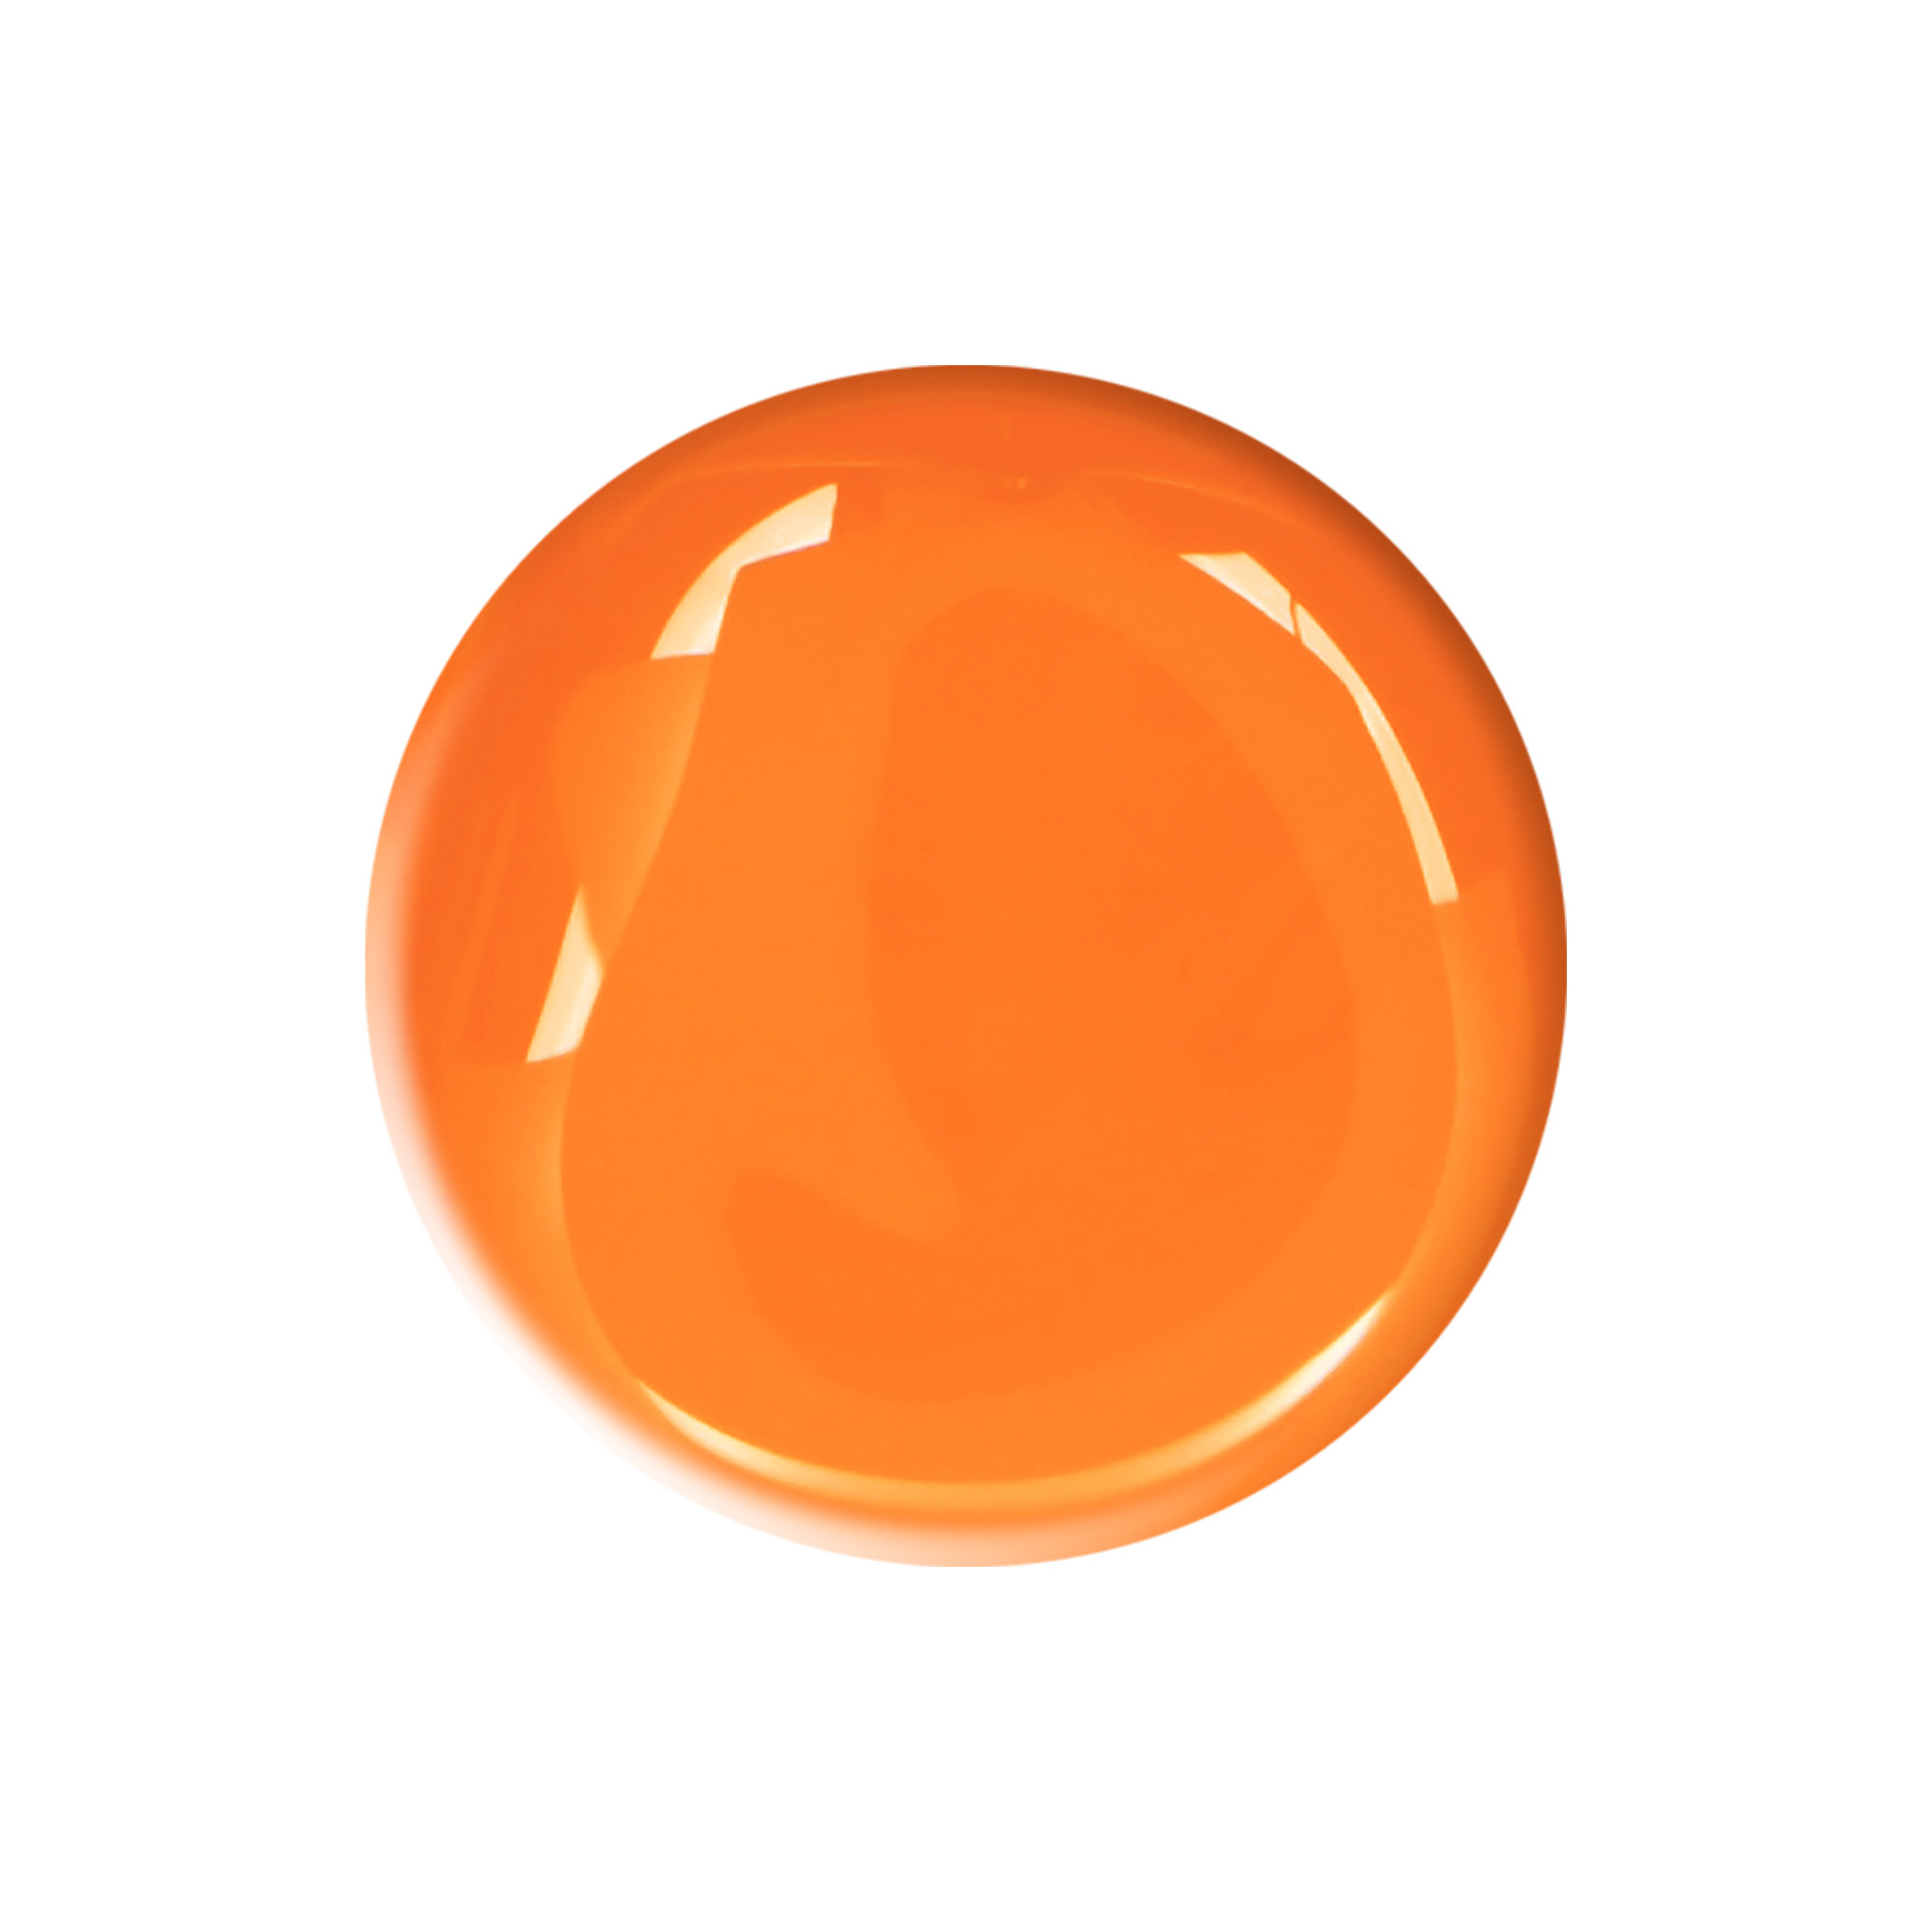 Laqeris orange fluo 10ml